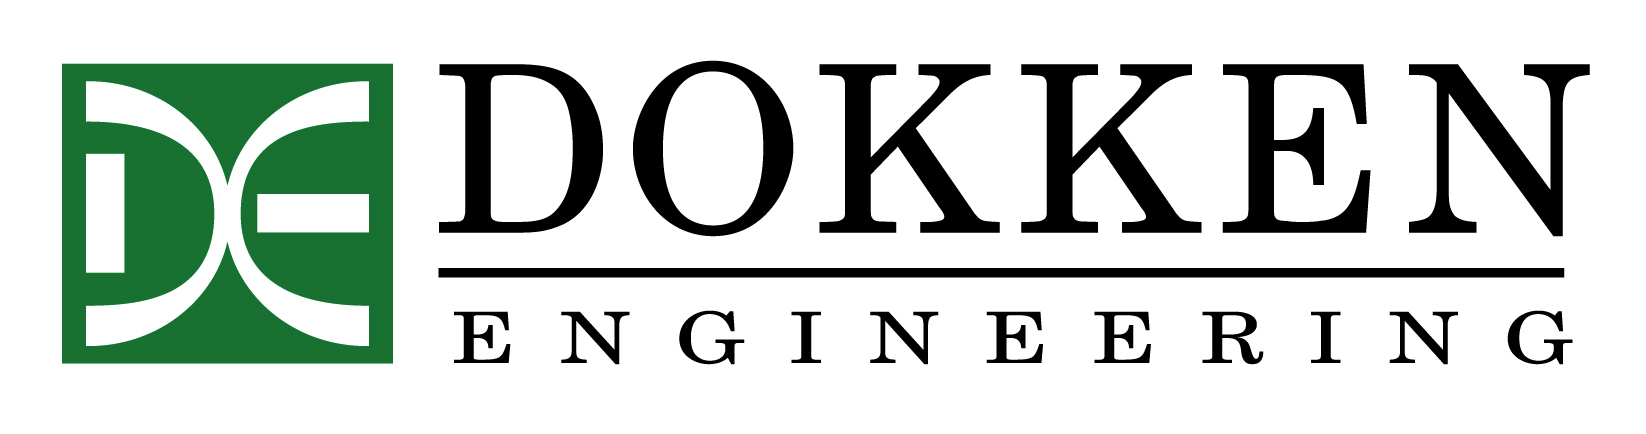 Dokken Engineering